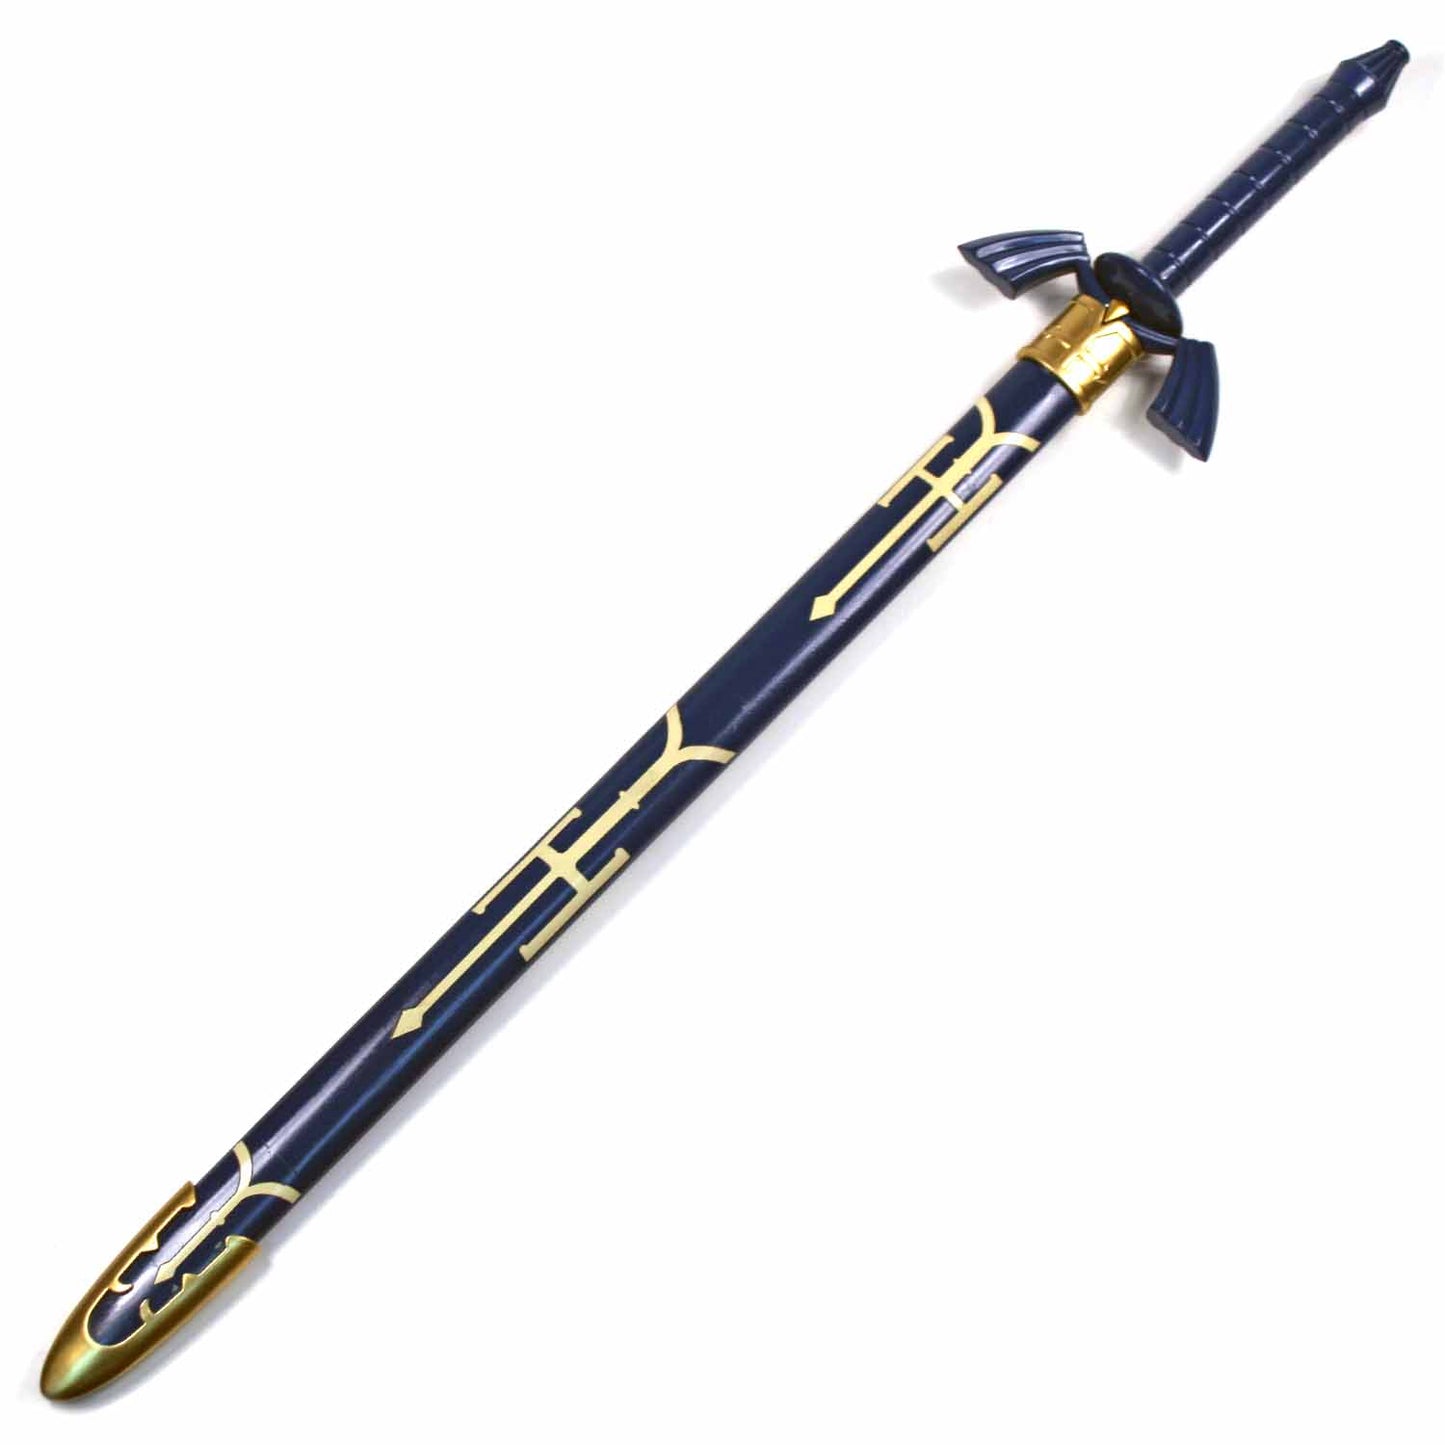 Legend of Zelda Master Sword with Scabbard